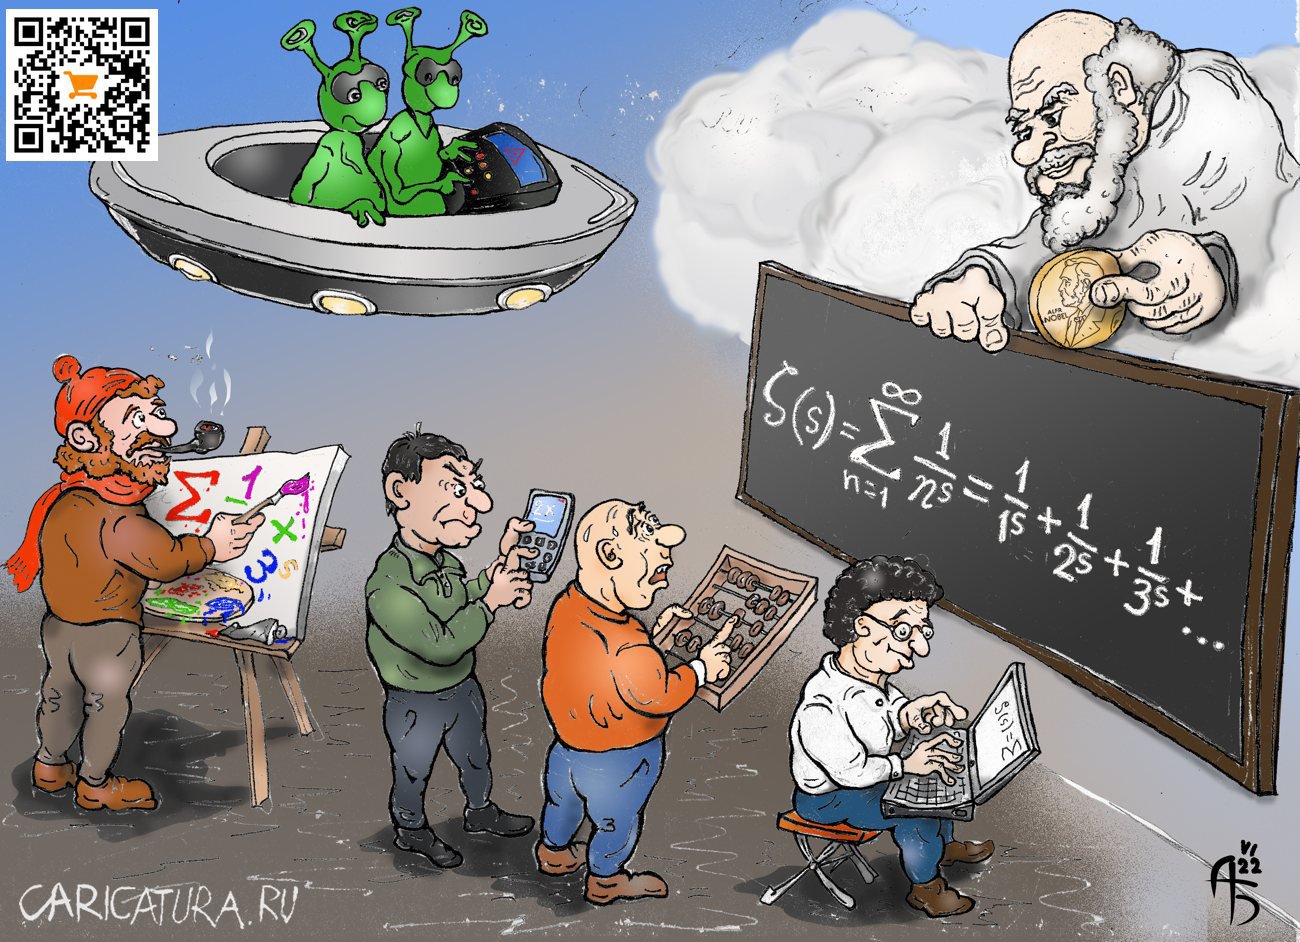 Карикатура "Кто быстрее", Александр Богданов